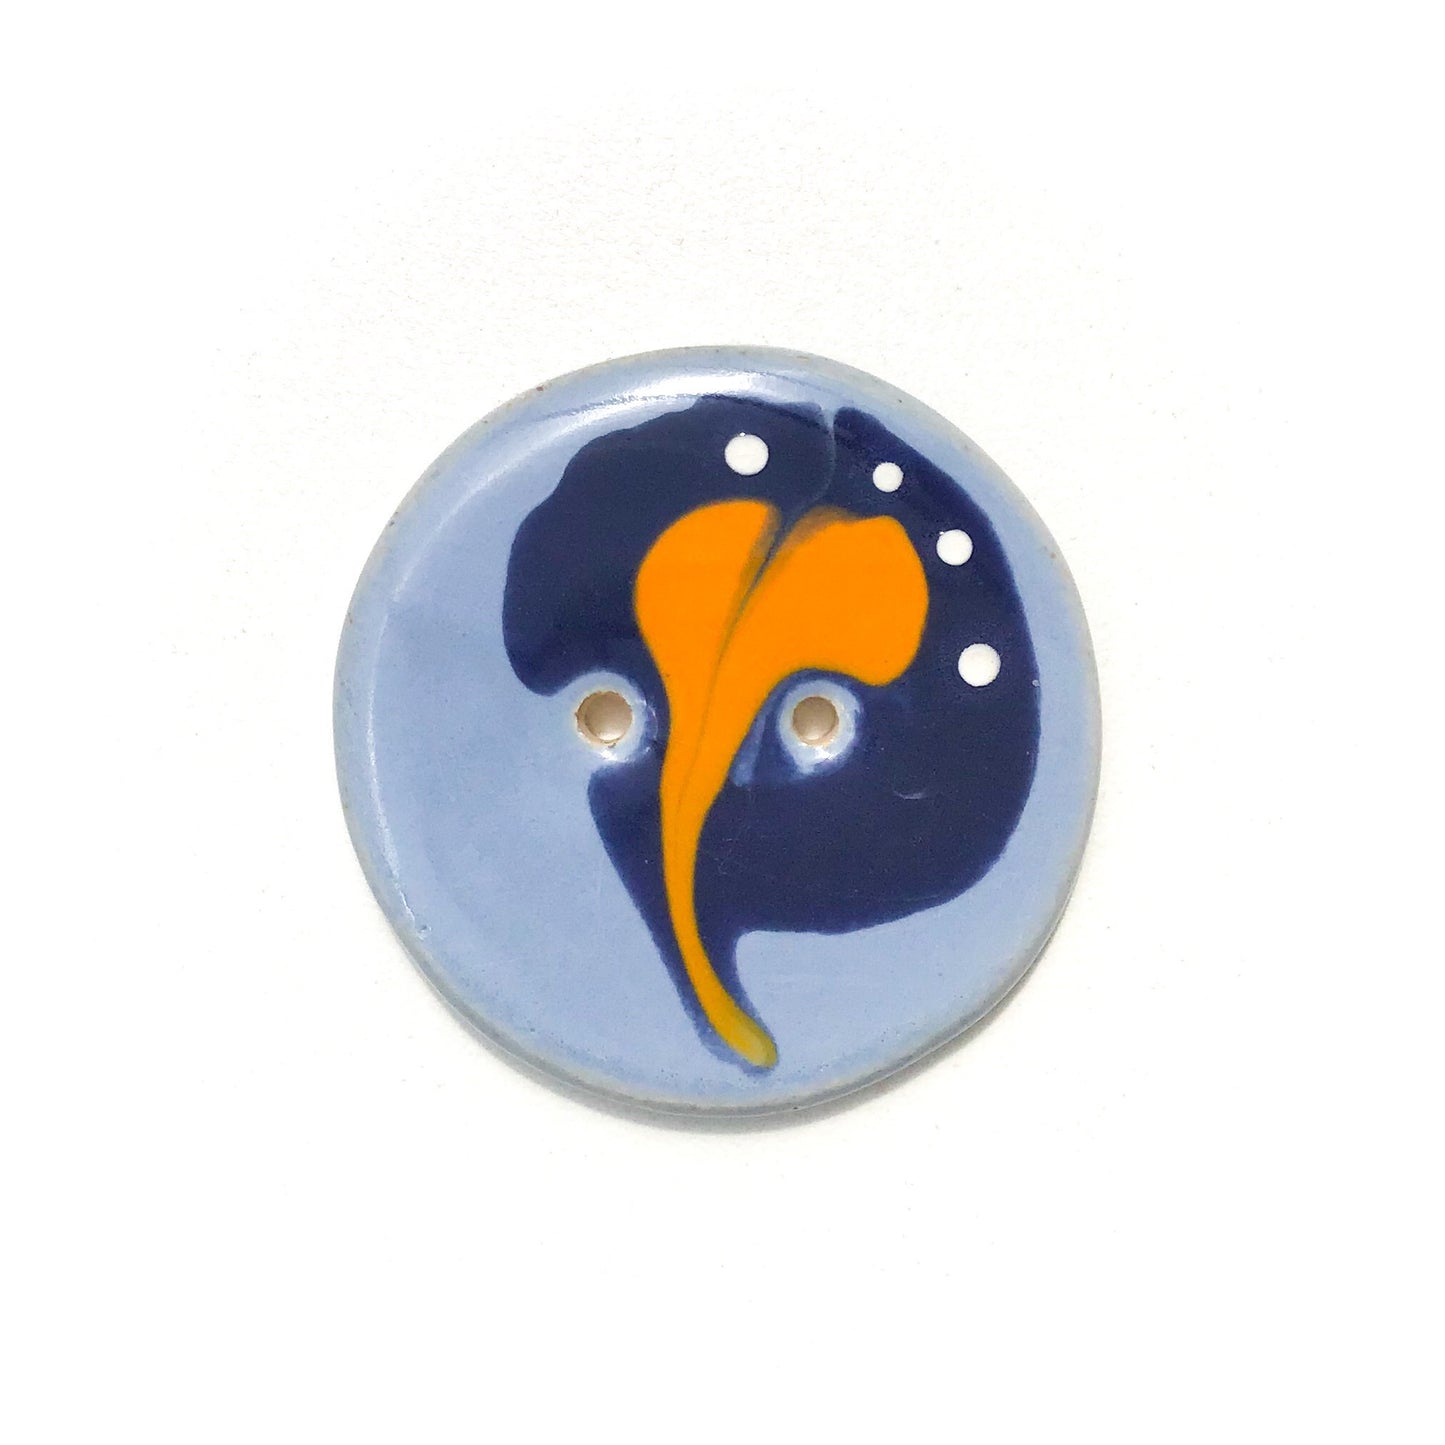 Blue & Orange 'Paisley' Button - Large Ceramic Button - 1 7/16"